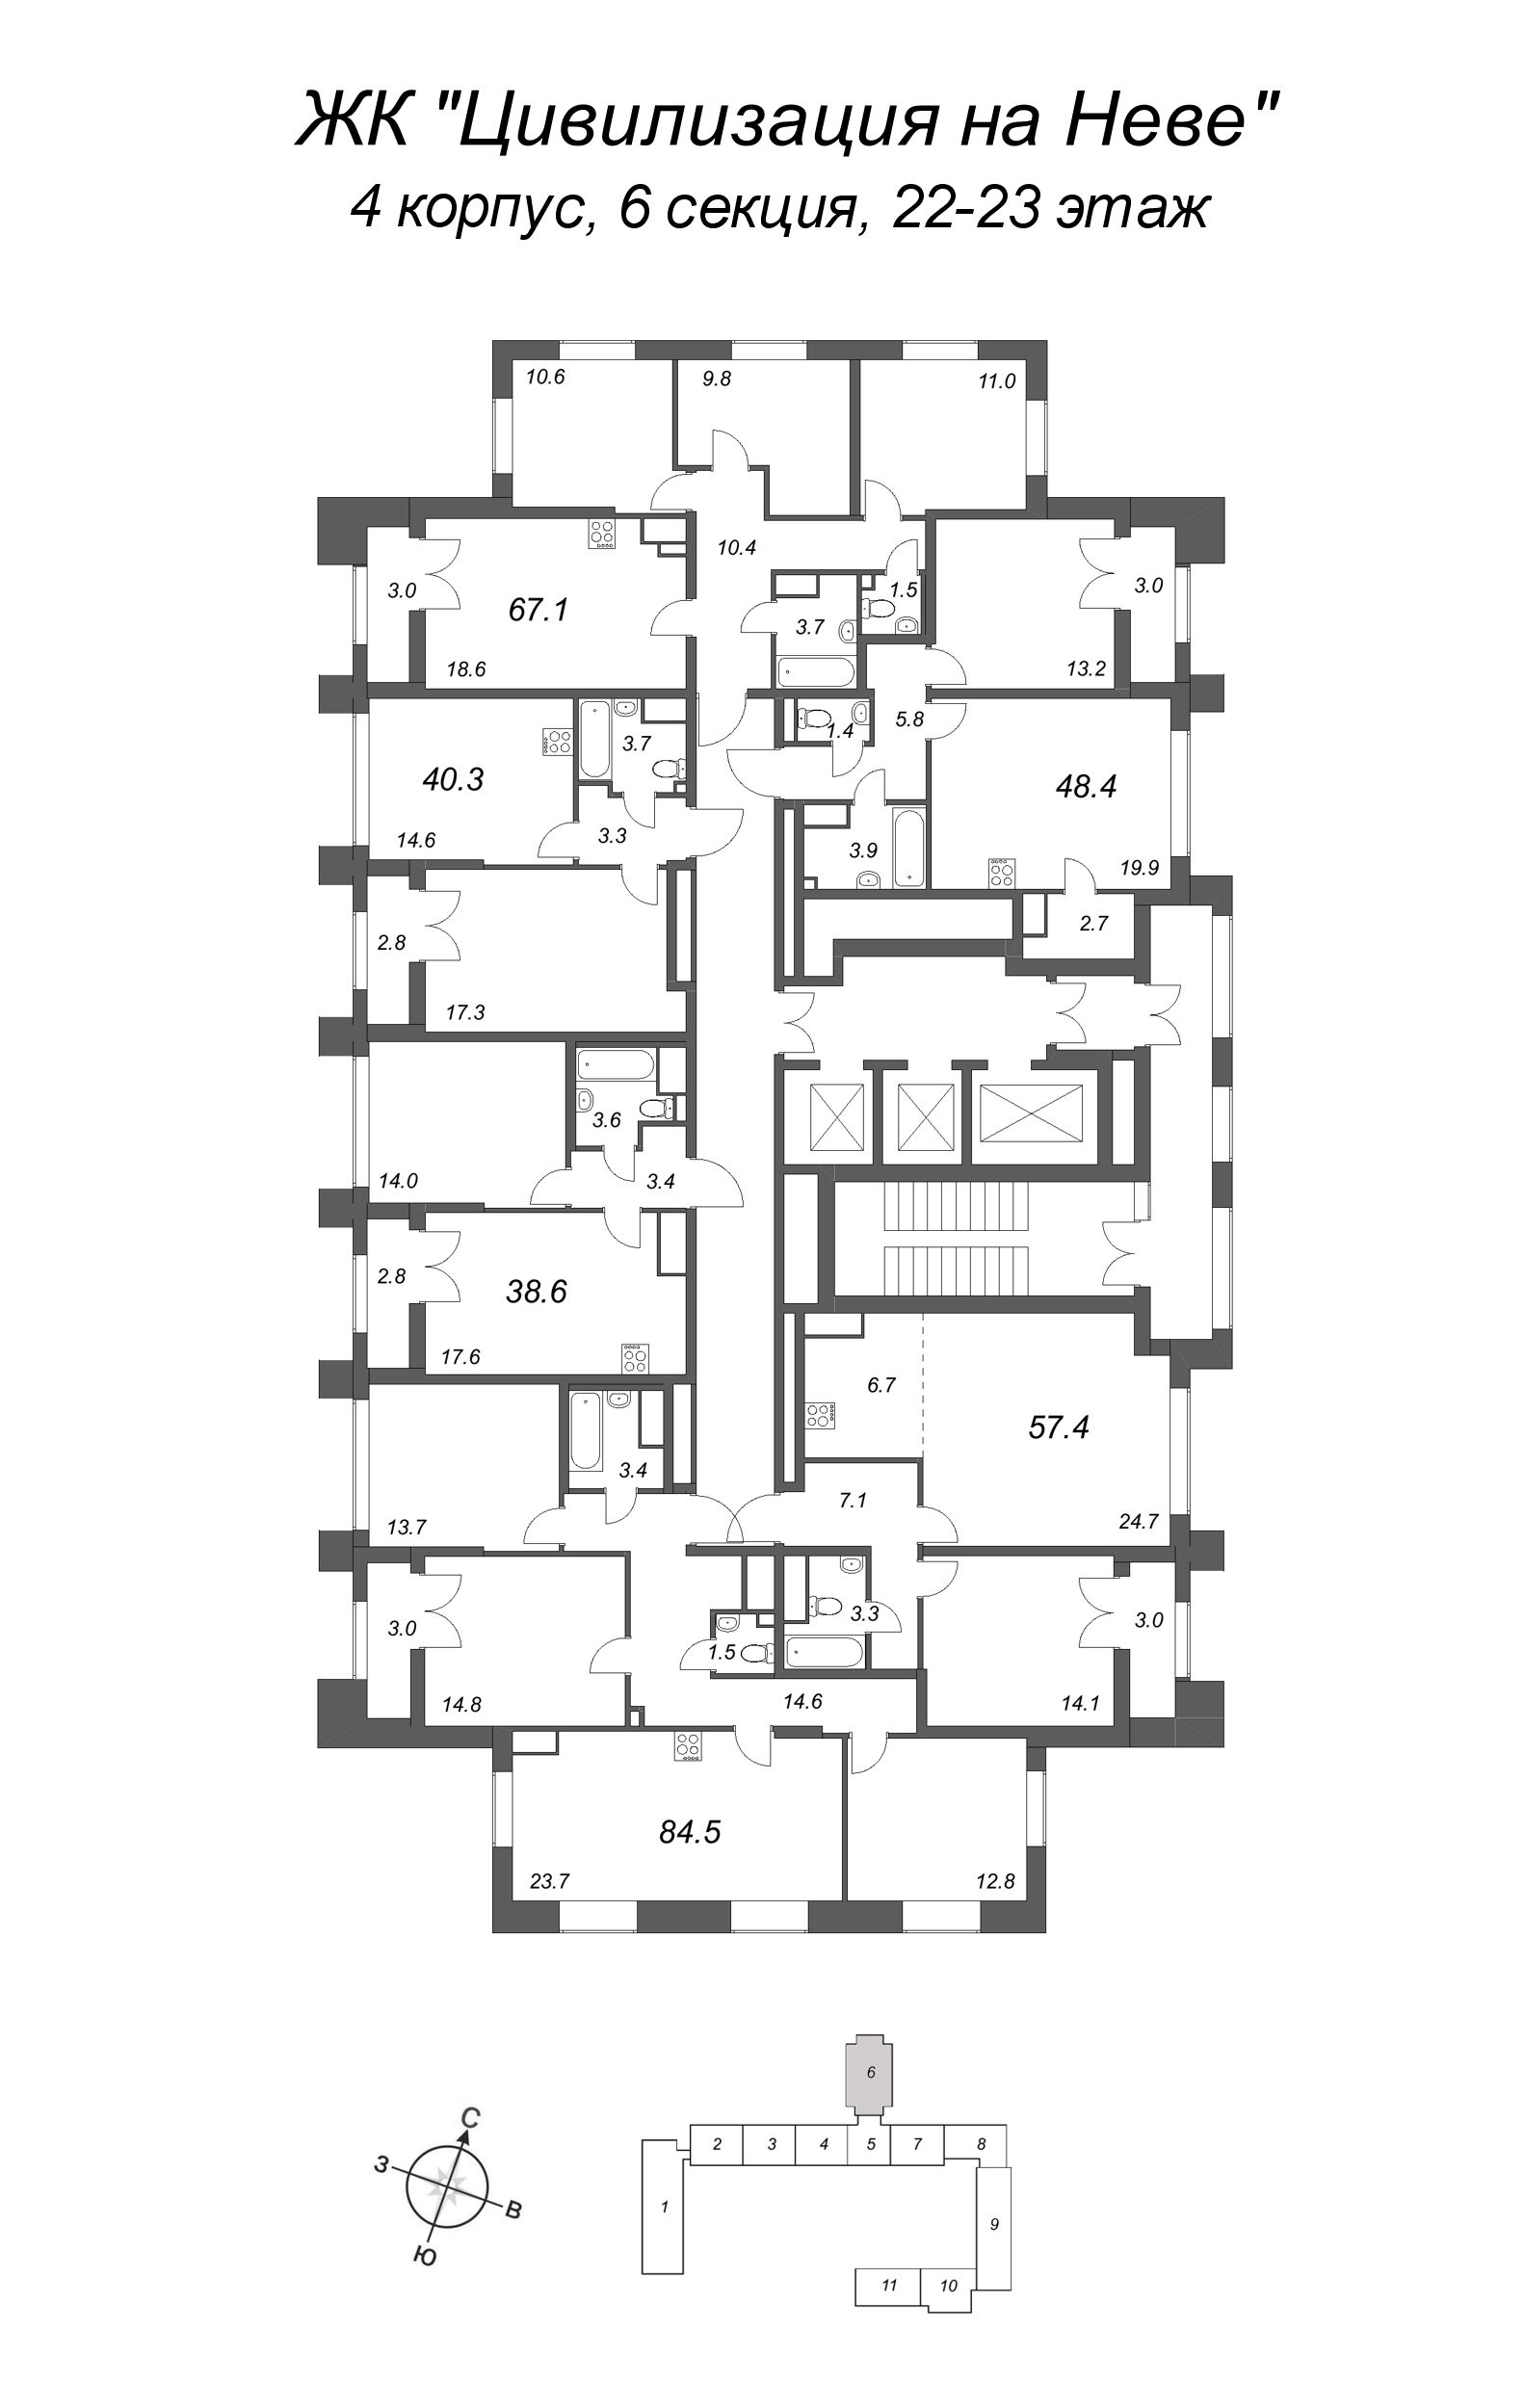 2-комнатная (Евро) квартира, 57.4 м² в ЖК "Цивилизация на Неве" - планировка этажа